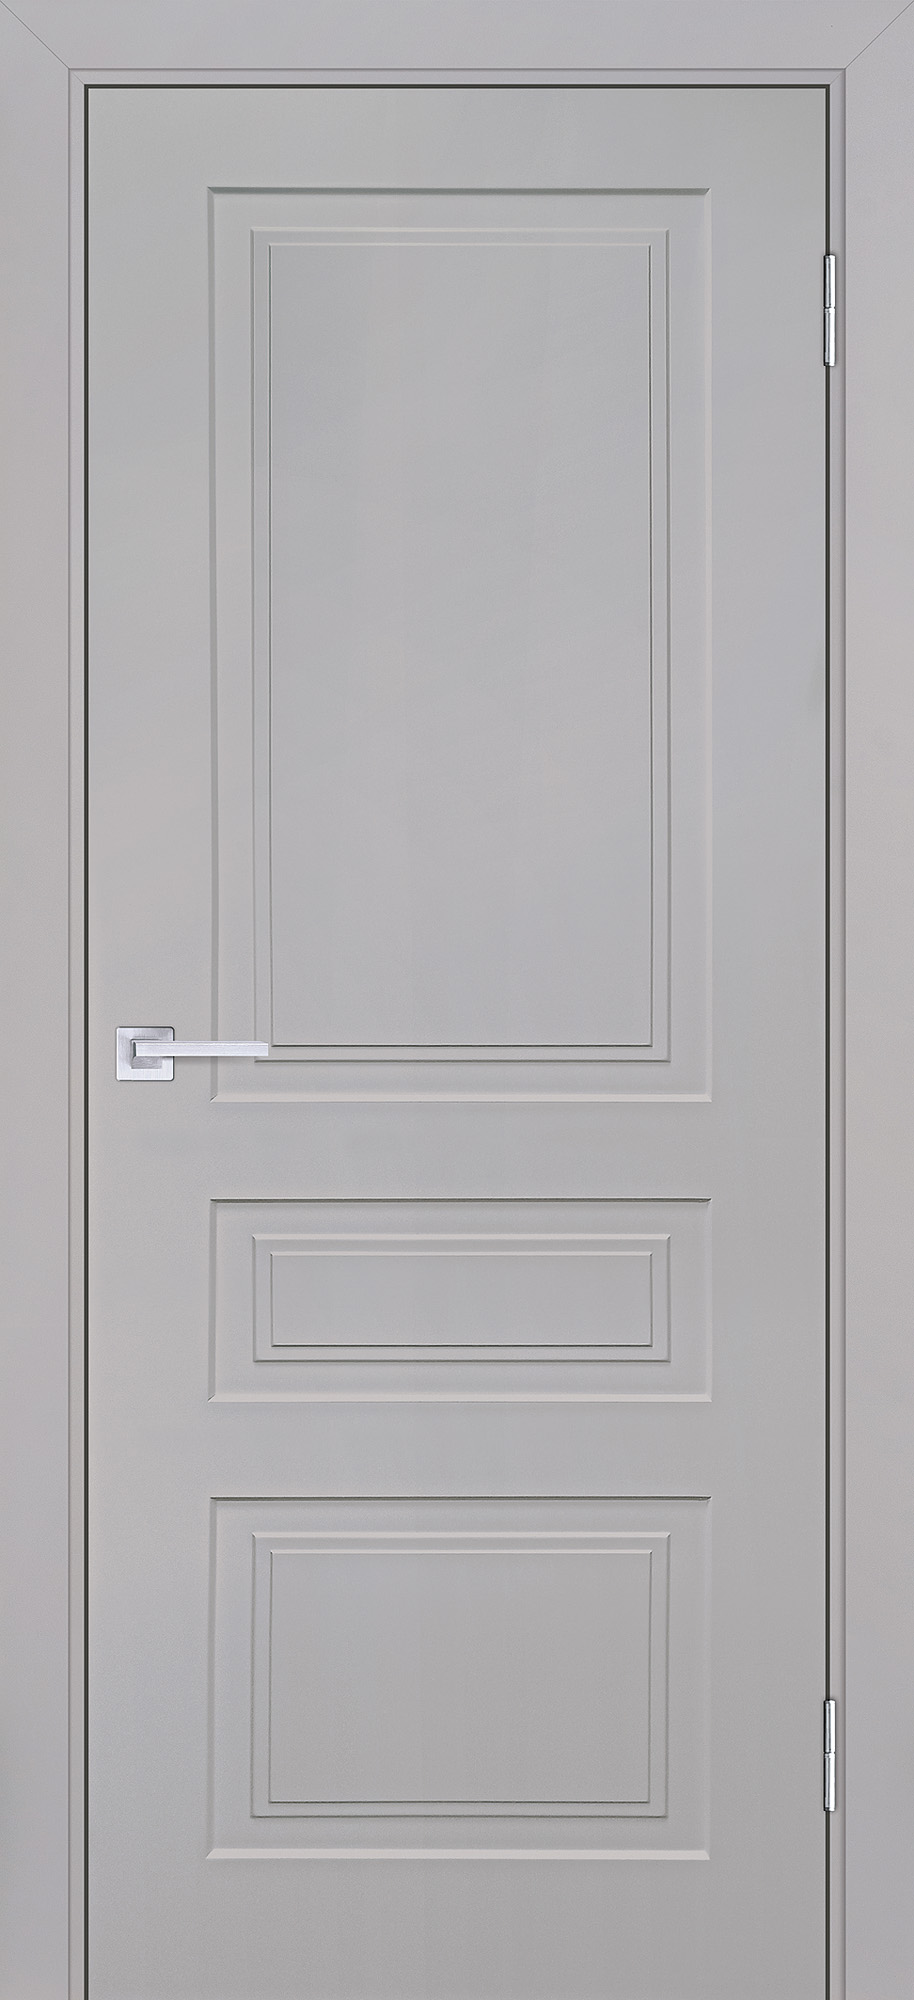 Двери крашеные (Эмаль) ТЕКОНА Смальта-Лайн 05 глухое Агат ral 7044 размер 190 х 55 см. артикул F0000093234